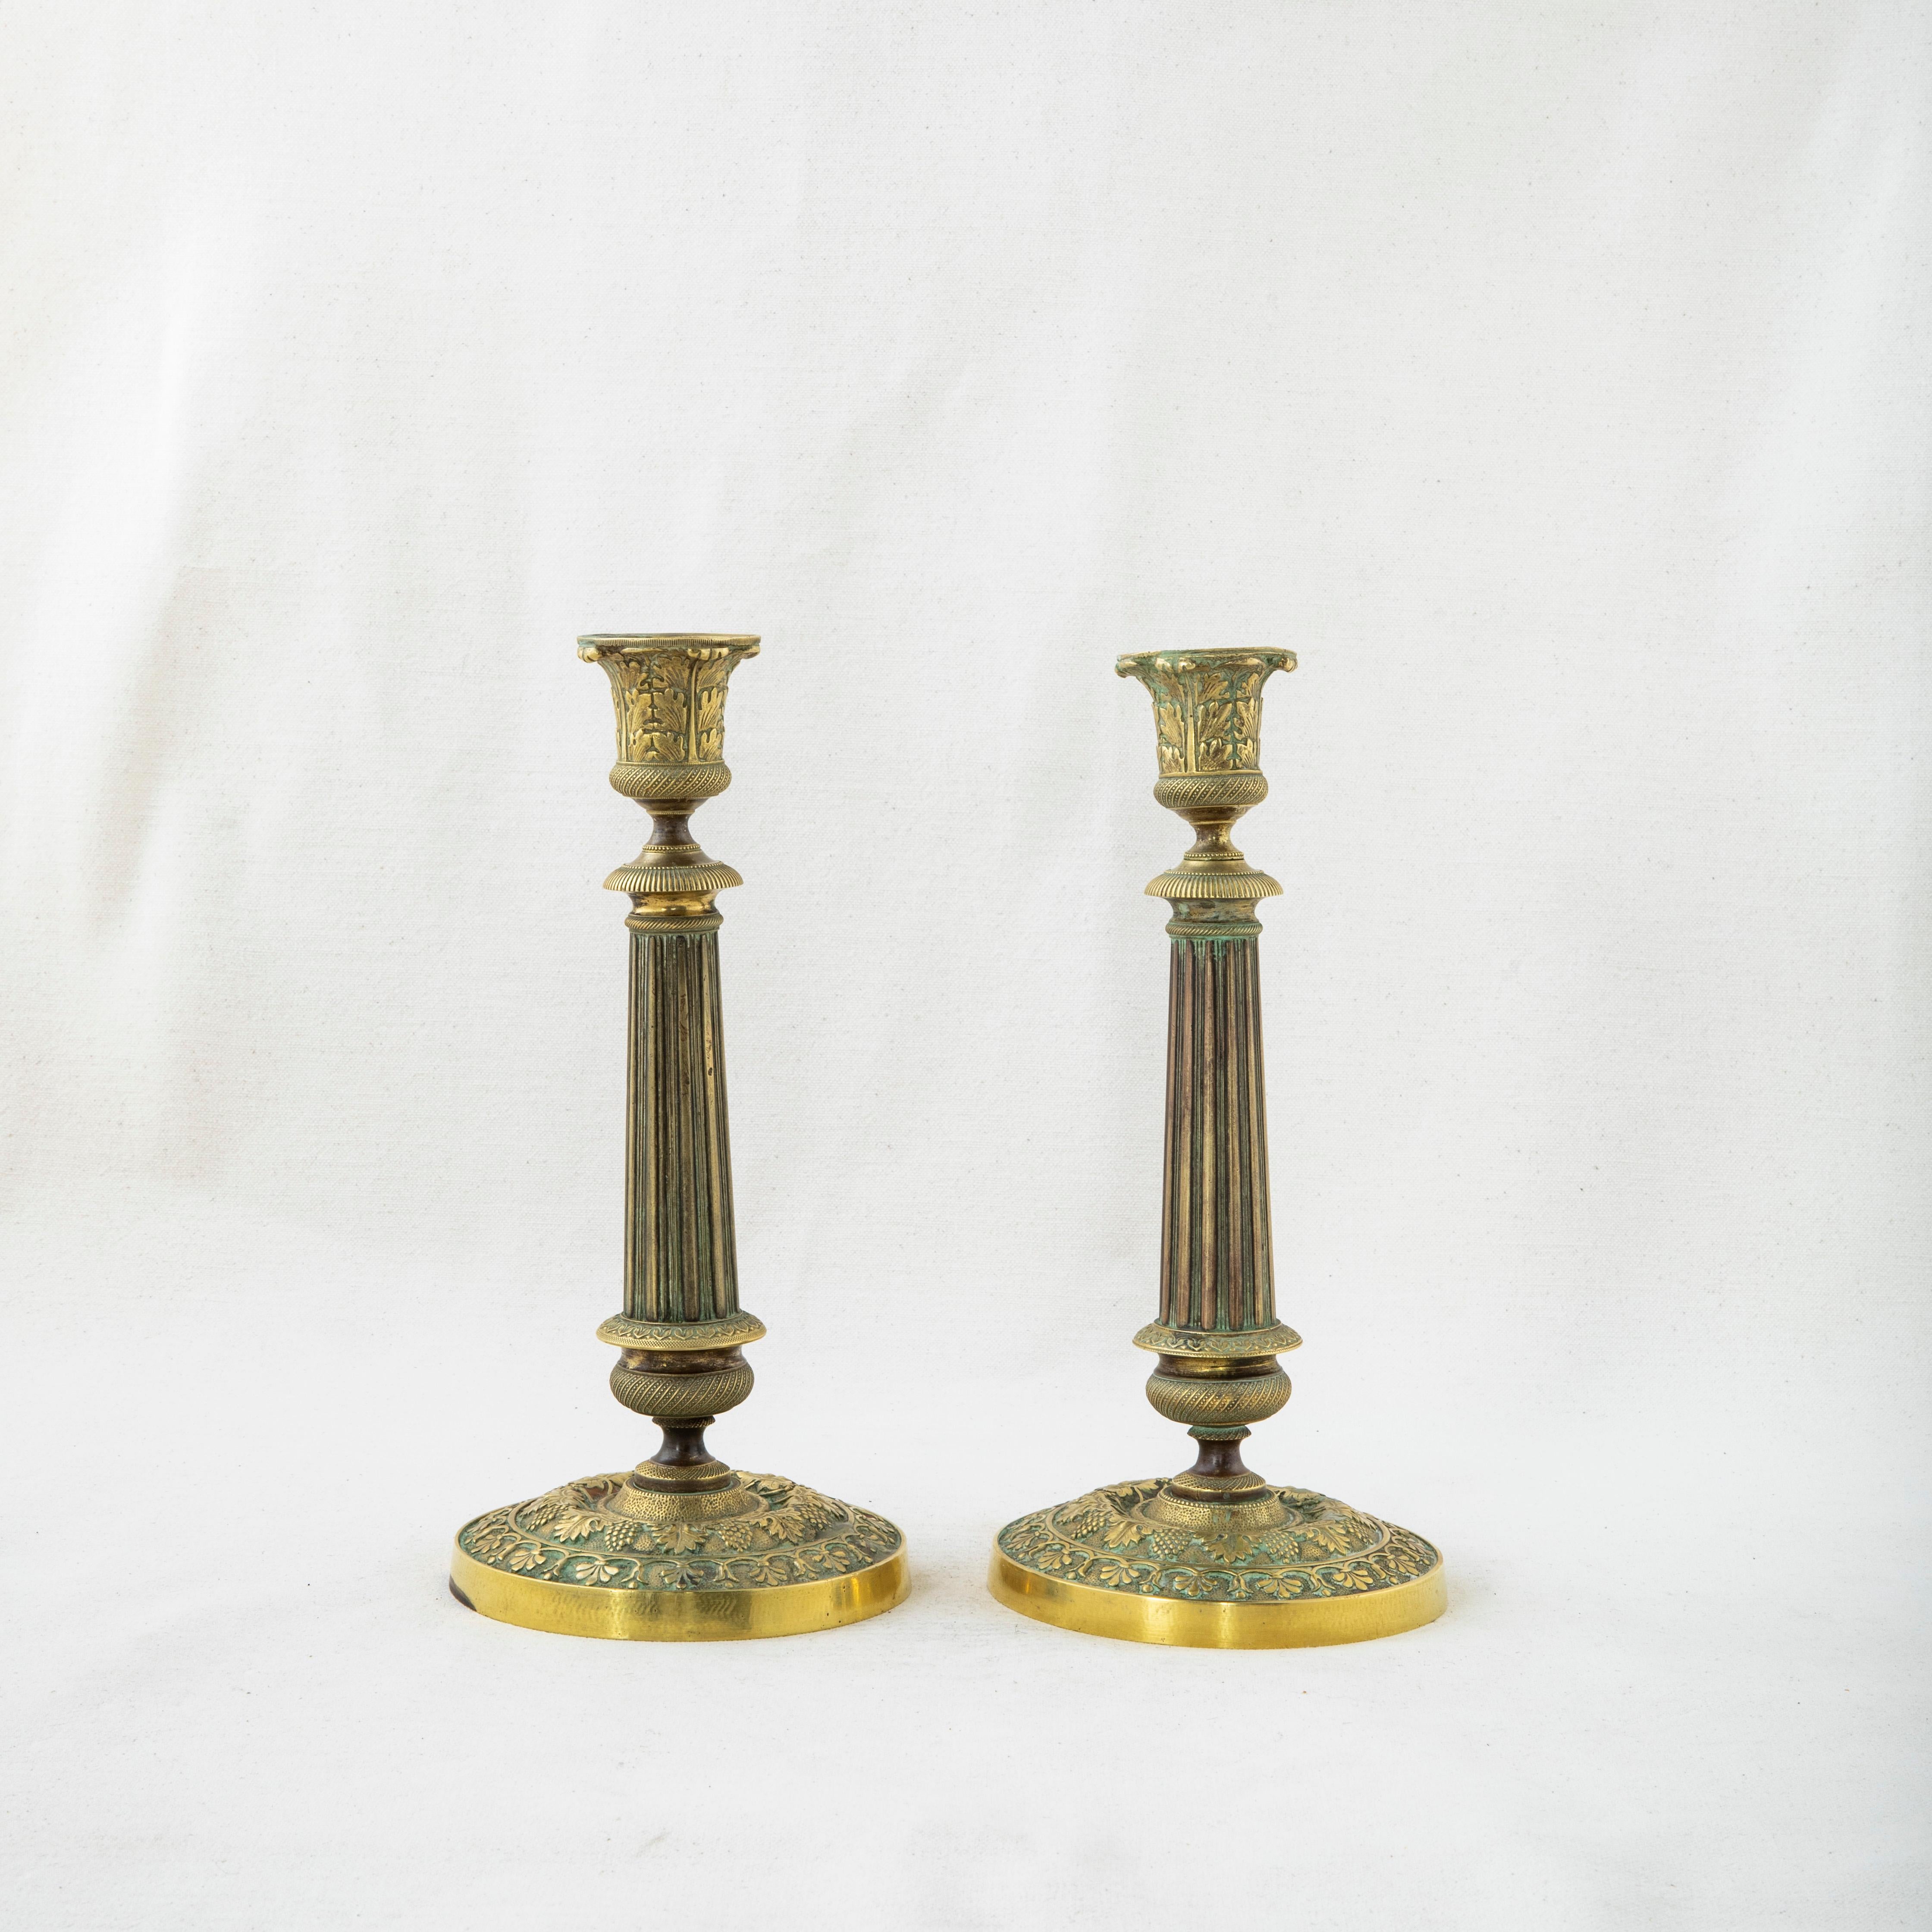 Dieses Paar französischer Bronzekerzenhalter aus dem späten neunzehnten Jahrhundert zeigt ein Trauben- und Weinblattmotiv sowie Kanneluren. Jeder Kerzenhalter ist 9,25 cm hoch und hat einen Durchmesser von 4,5 cm an der Basis. Die Kerzenhalter sind